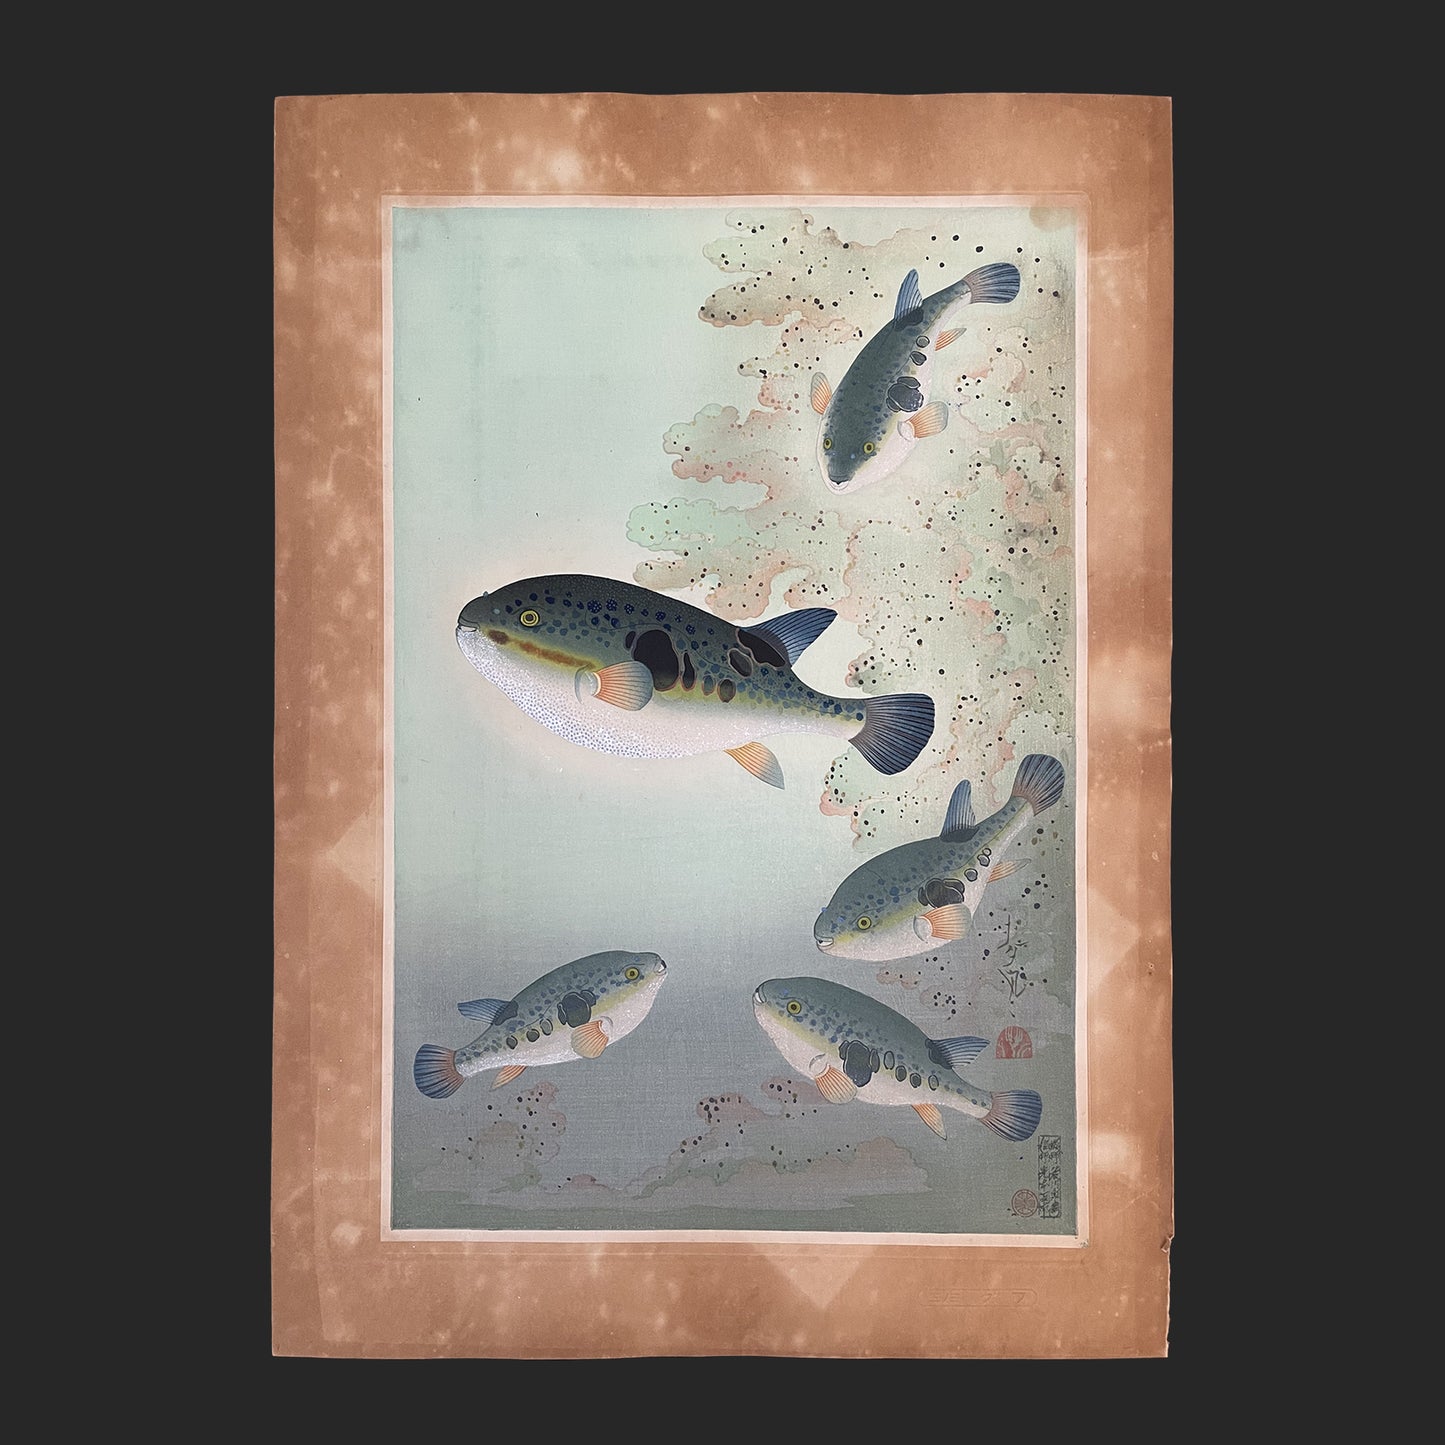 大野 麦風 ONO Bakufu 大日本魚類画集より「フグ」